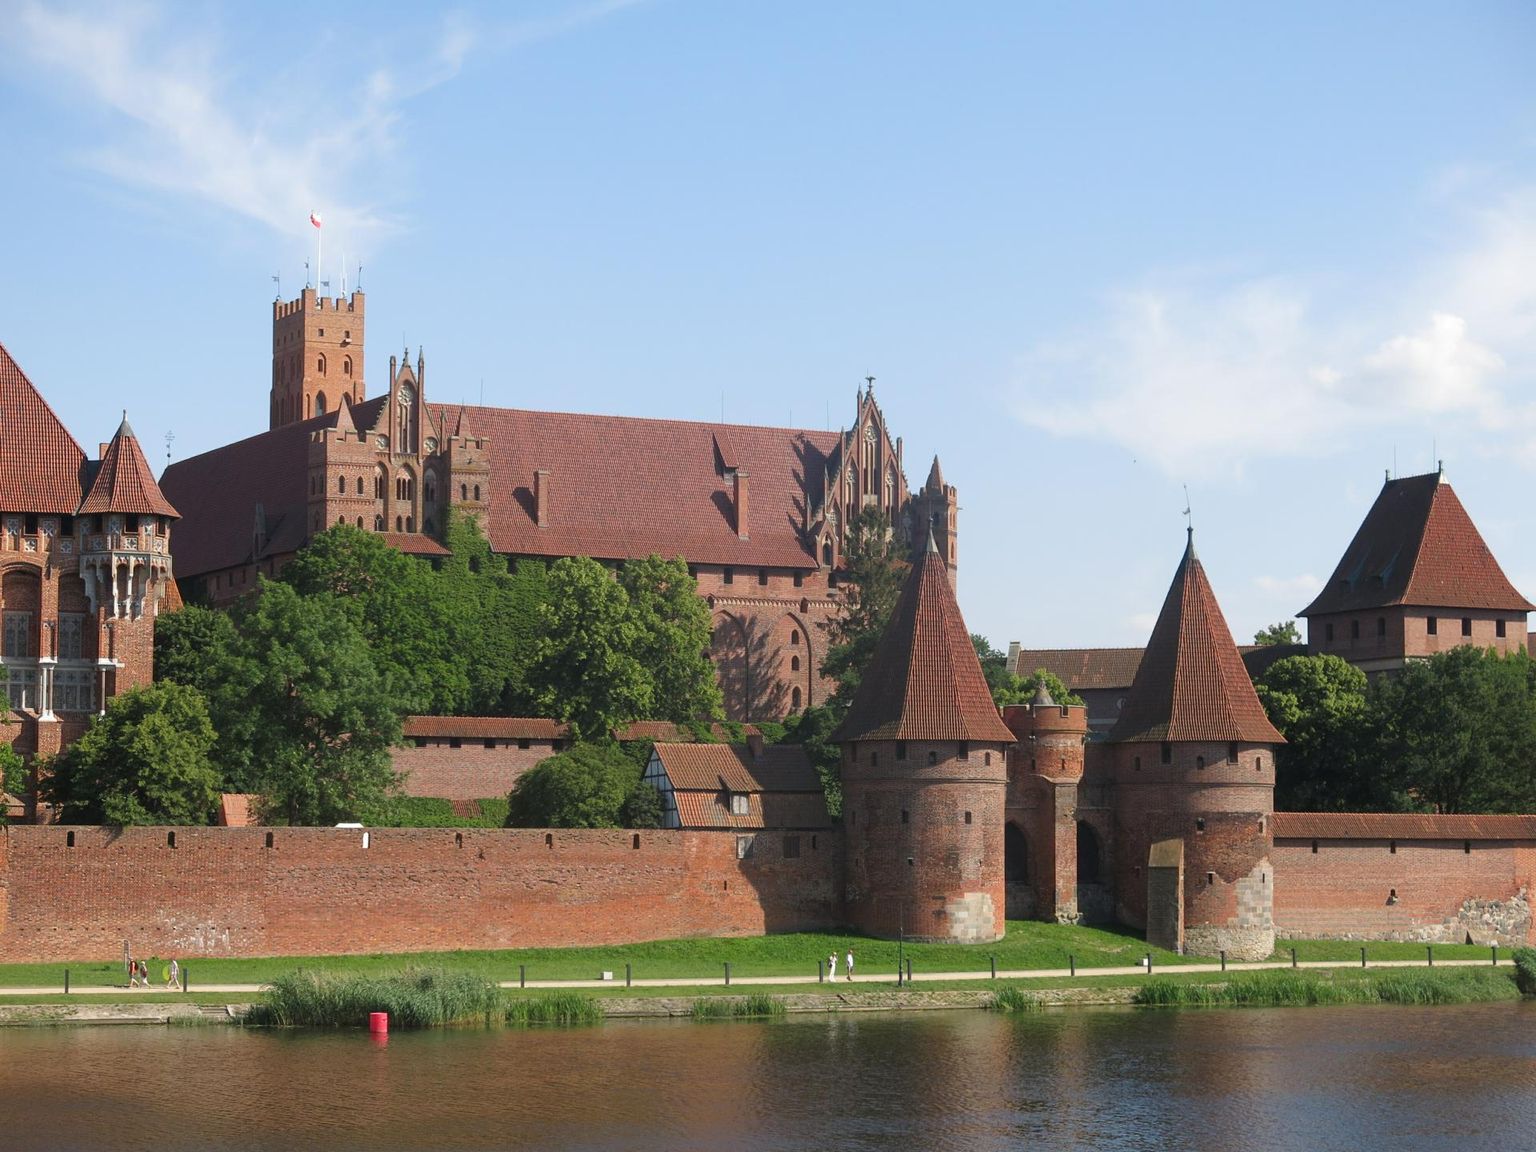 Maailma suurim tellistest linnus ehk Malborki loss sai 14. sajandil Saksa ordu keskuseks. 